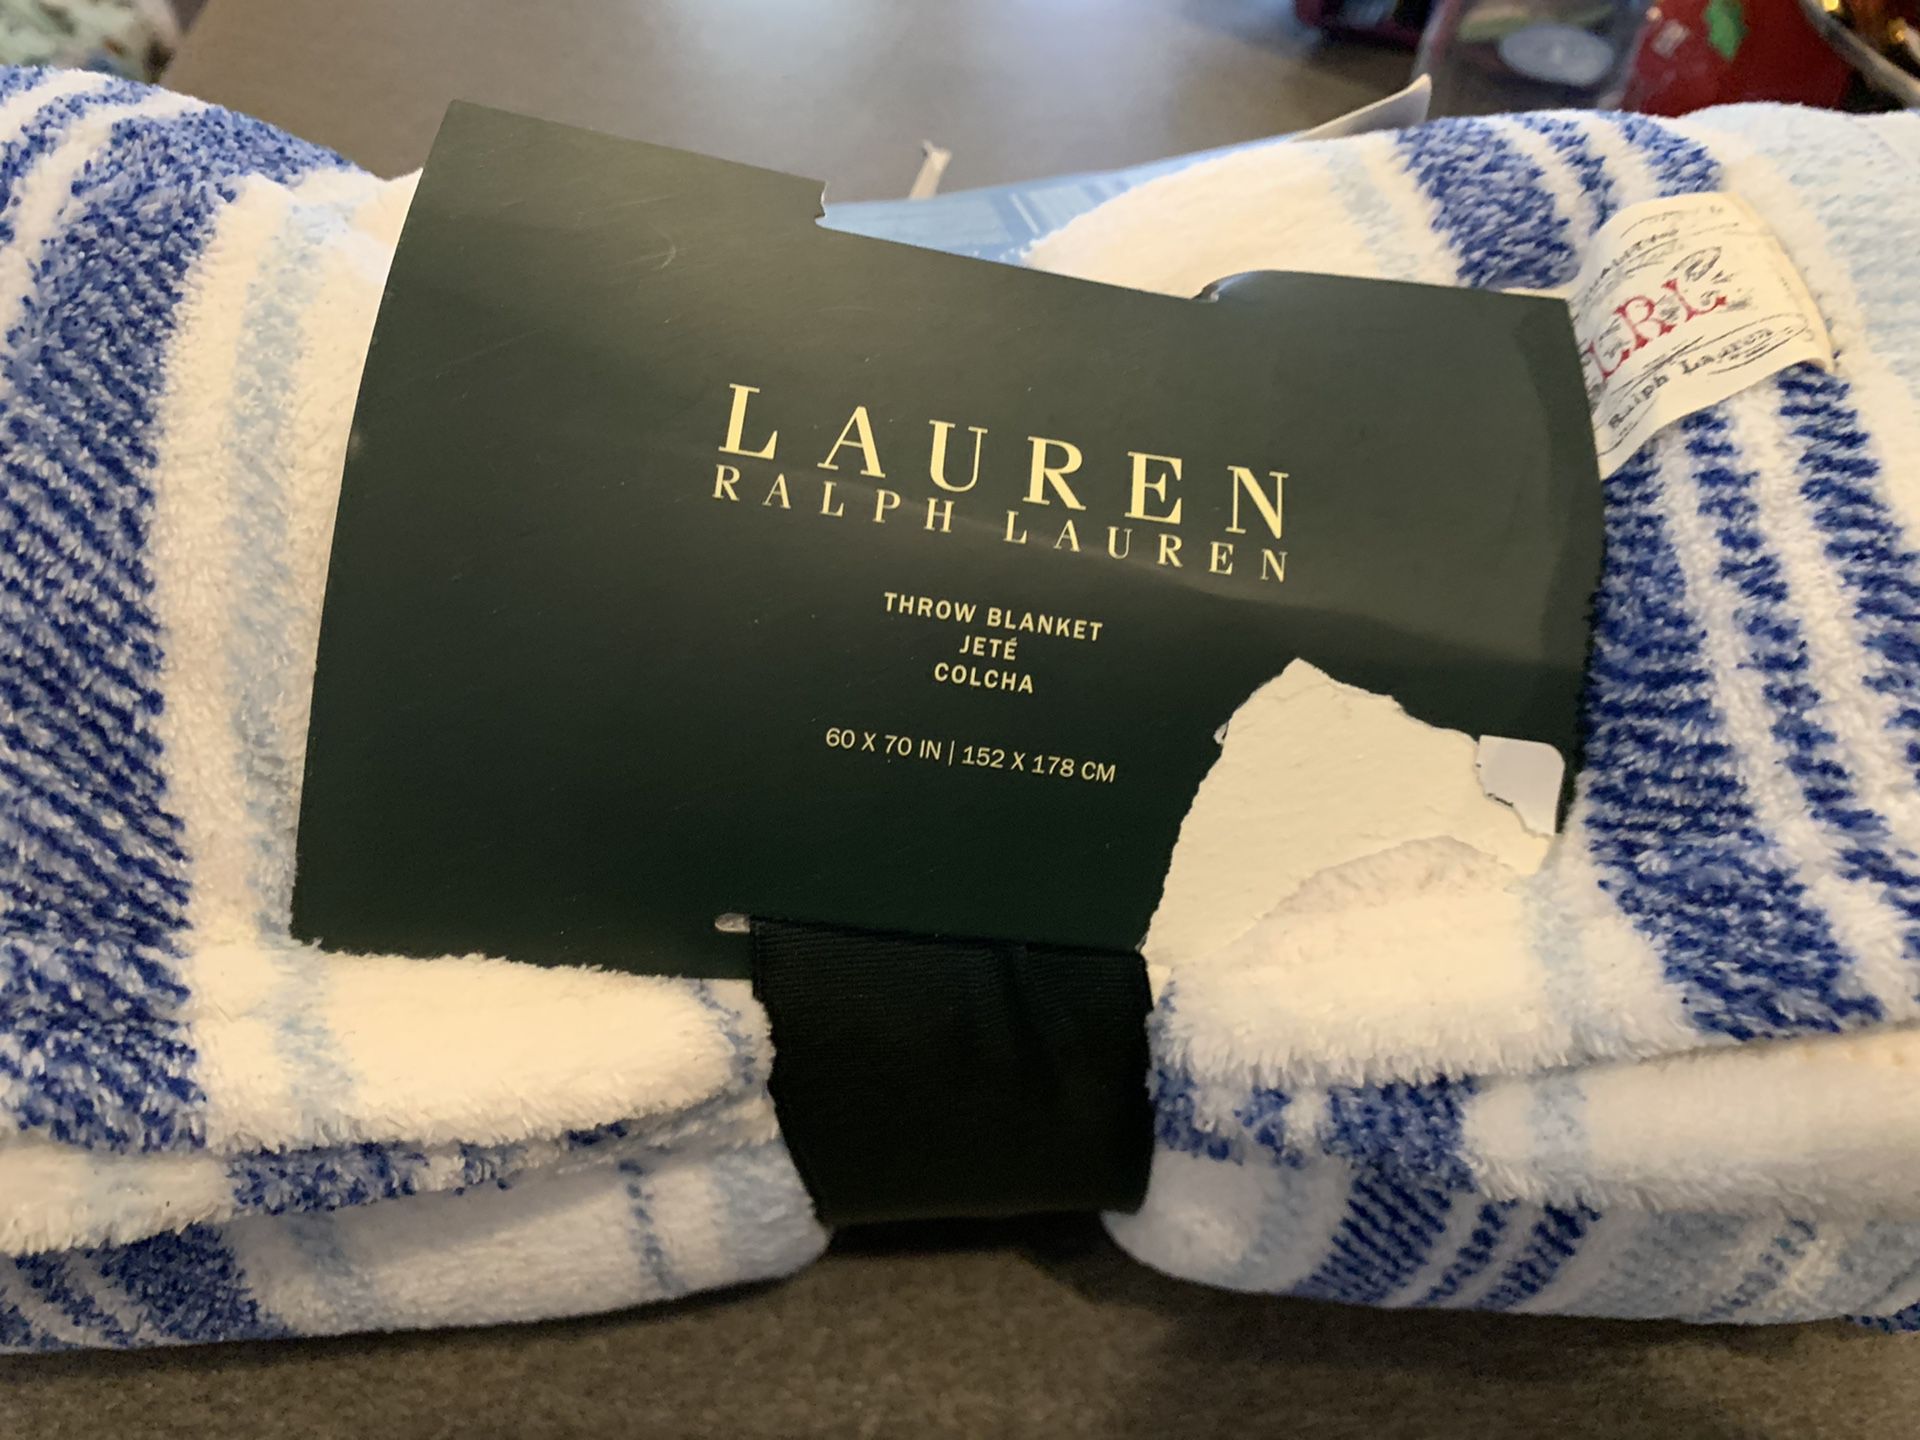 New Lauren fleece throw blanket